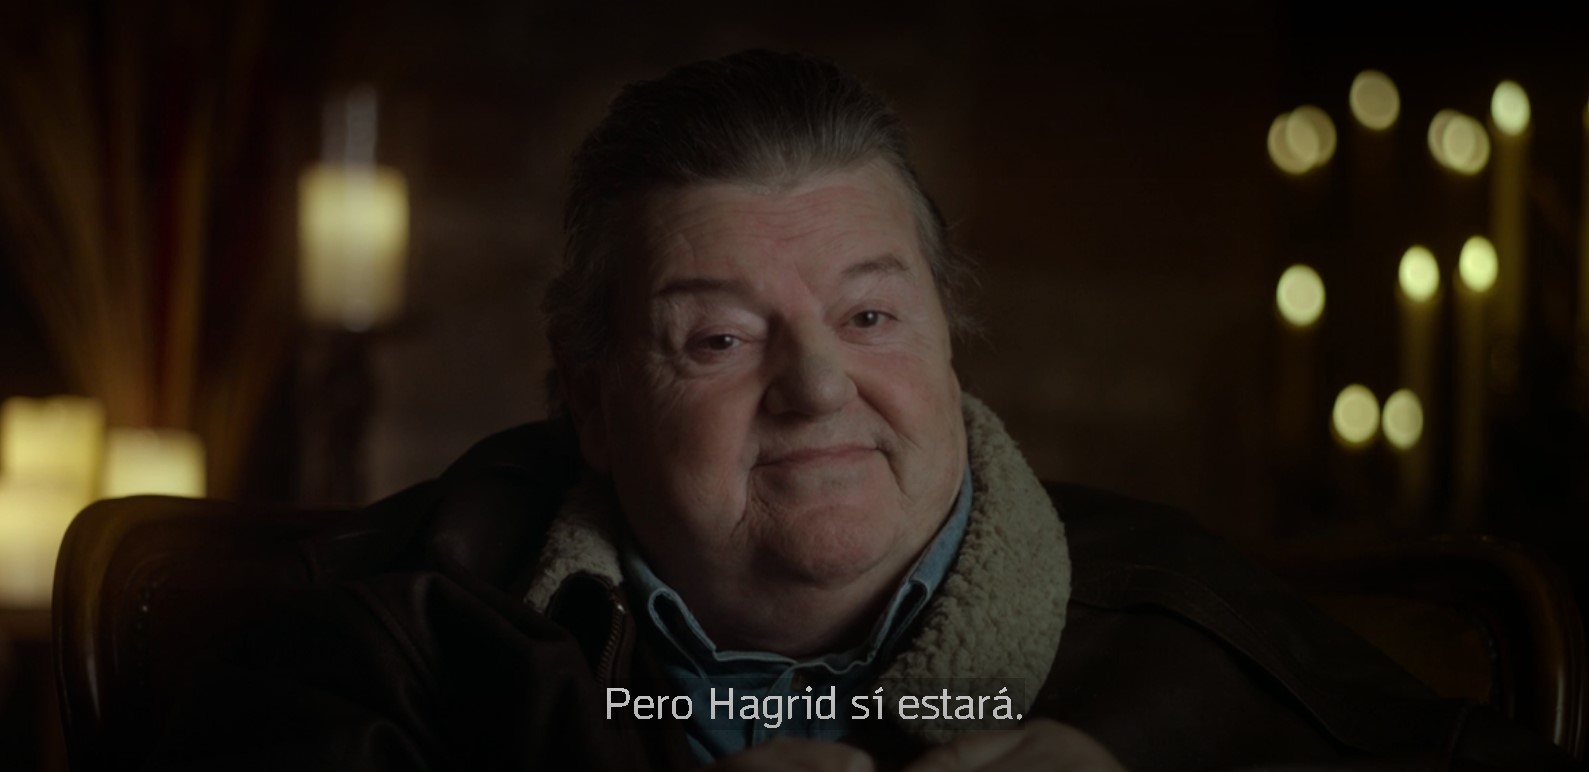 Fallece actor que interpretó a Hagrid en la saga Harry Potter